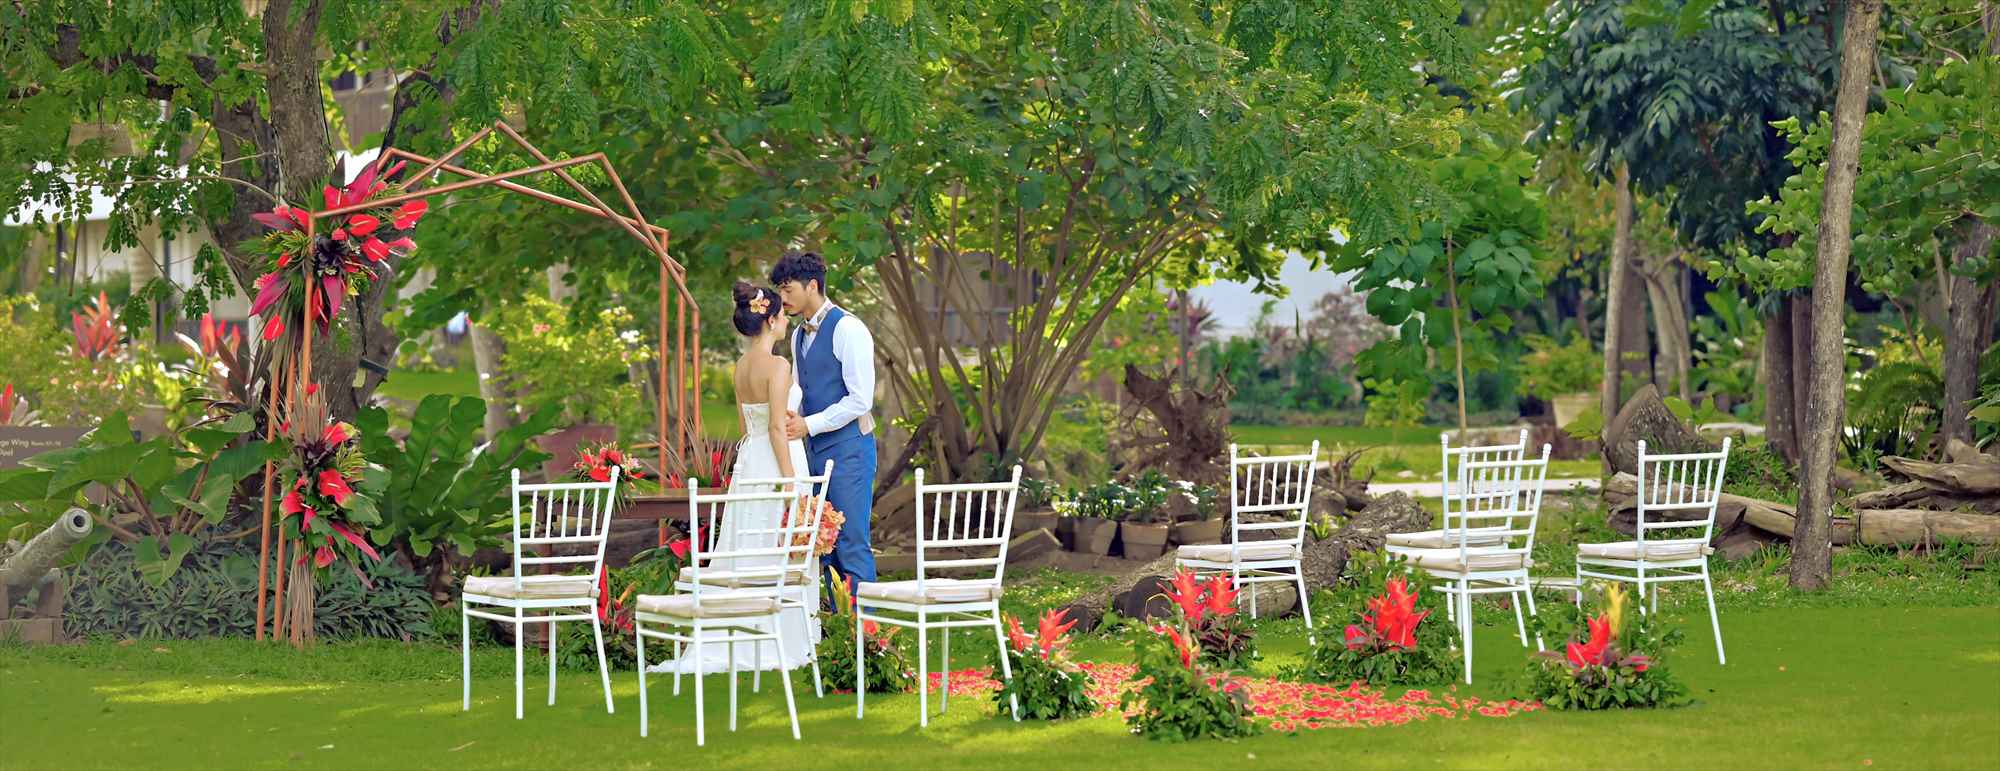 セブ島・ガーデン・ウェディング・挙式・結婚式